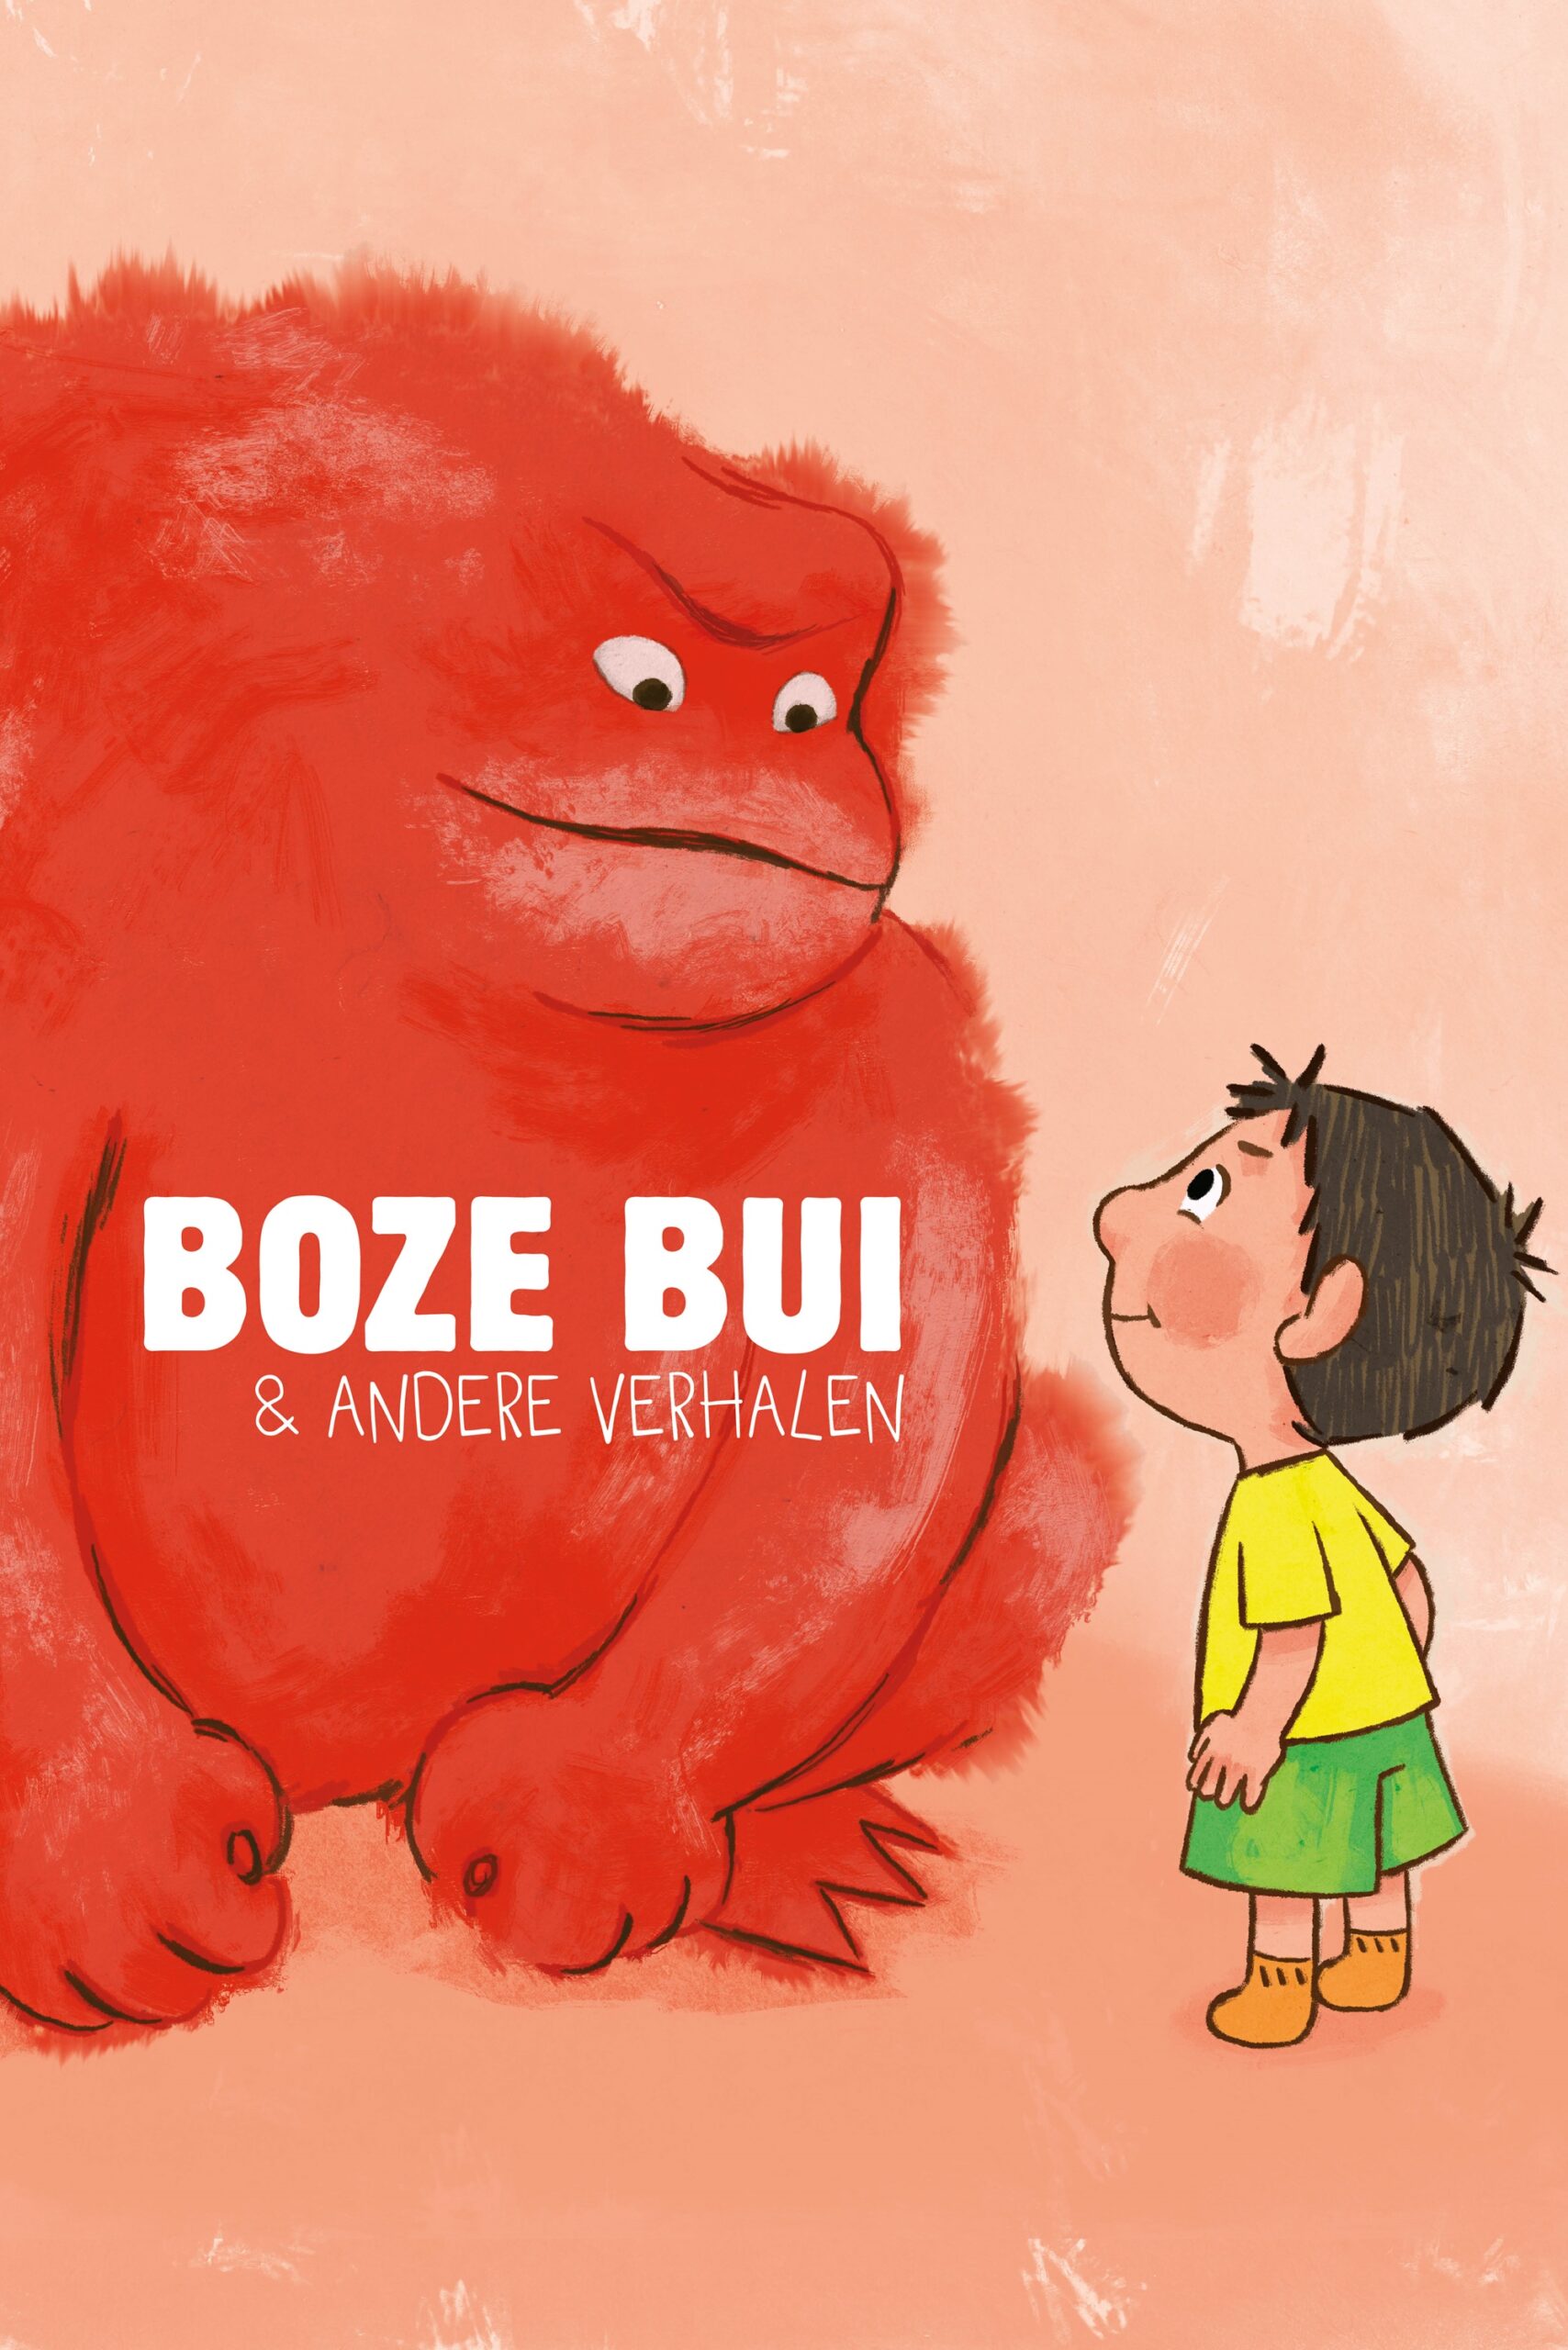 Boze Bui & andere verhalen